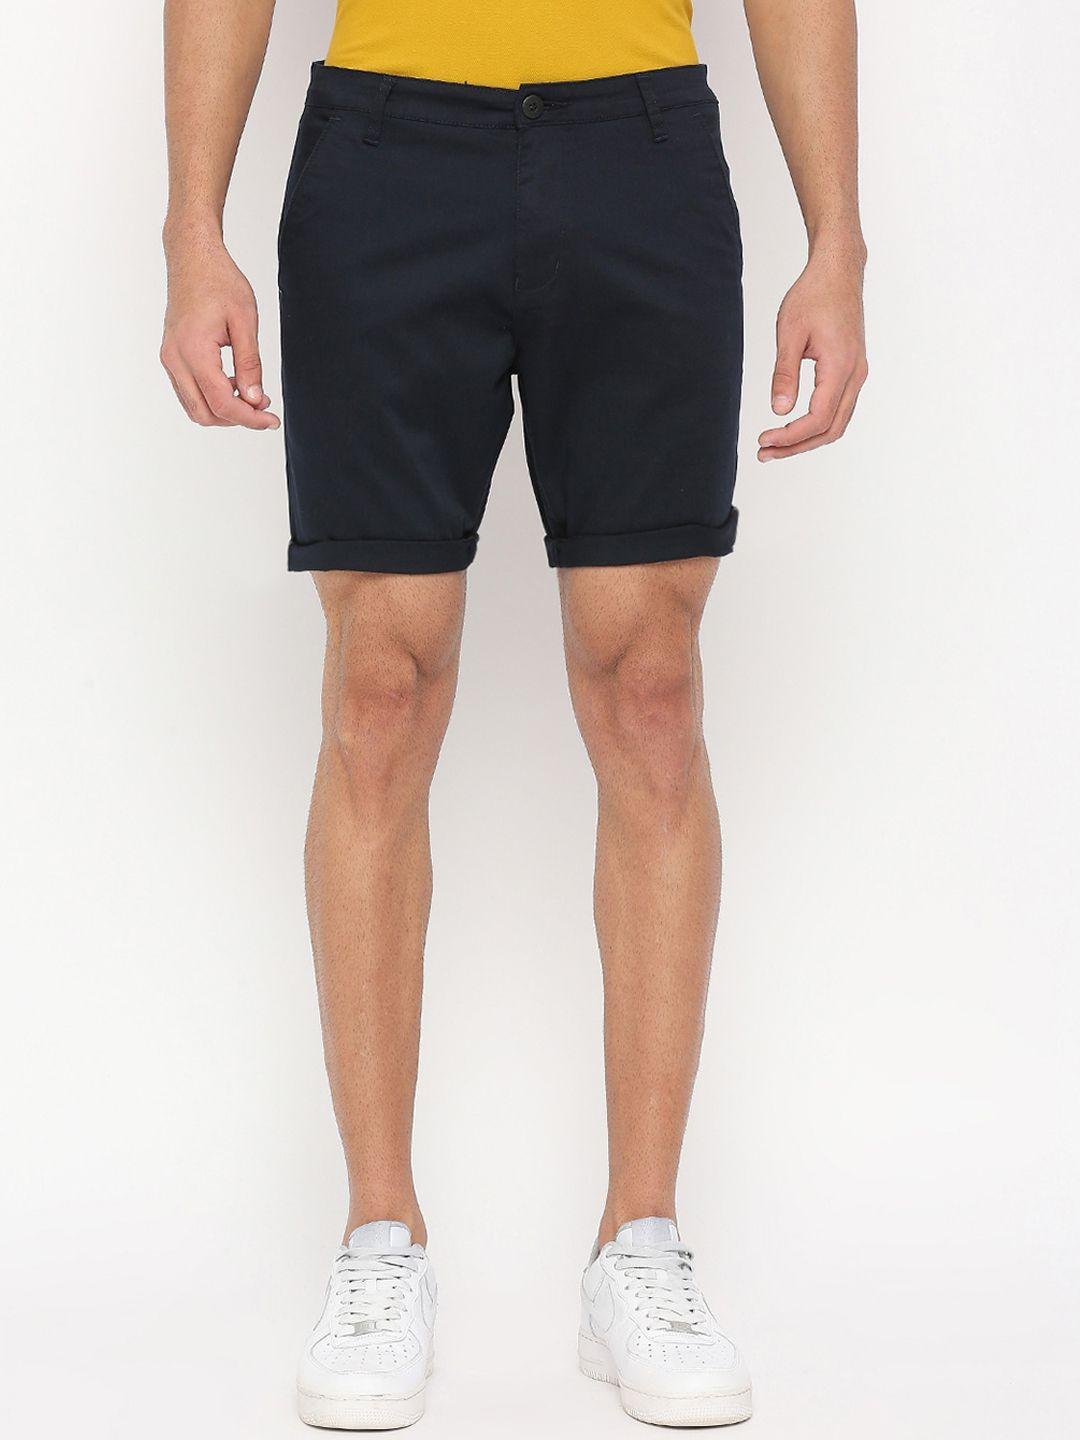 beevee men navy blue outdoor shorts